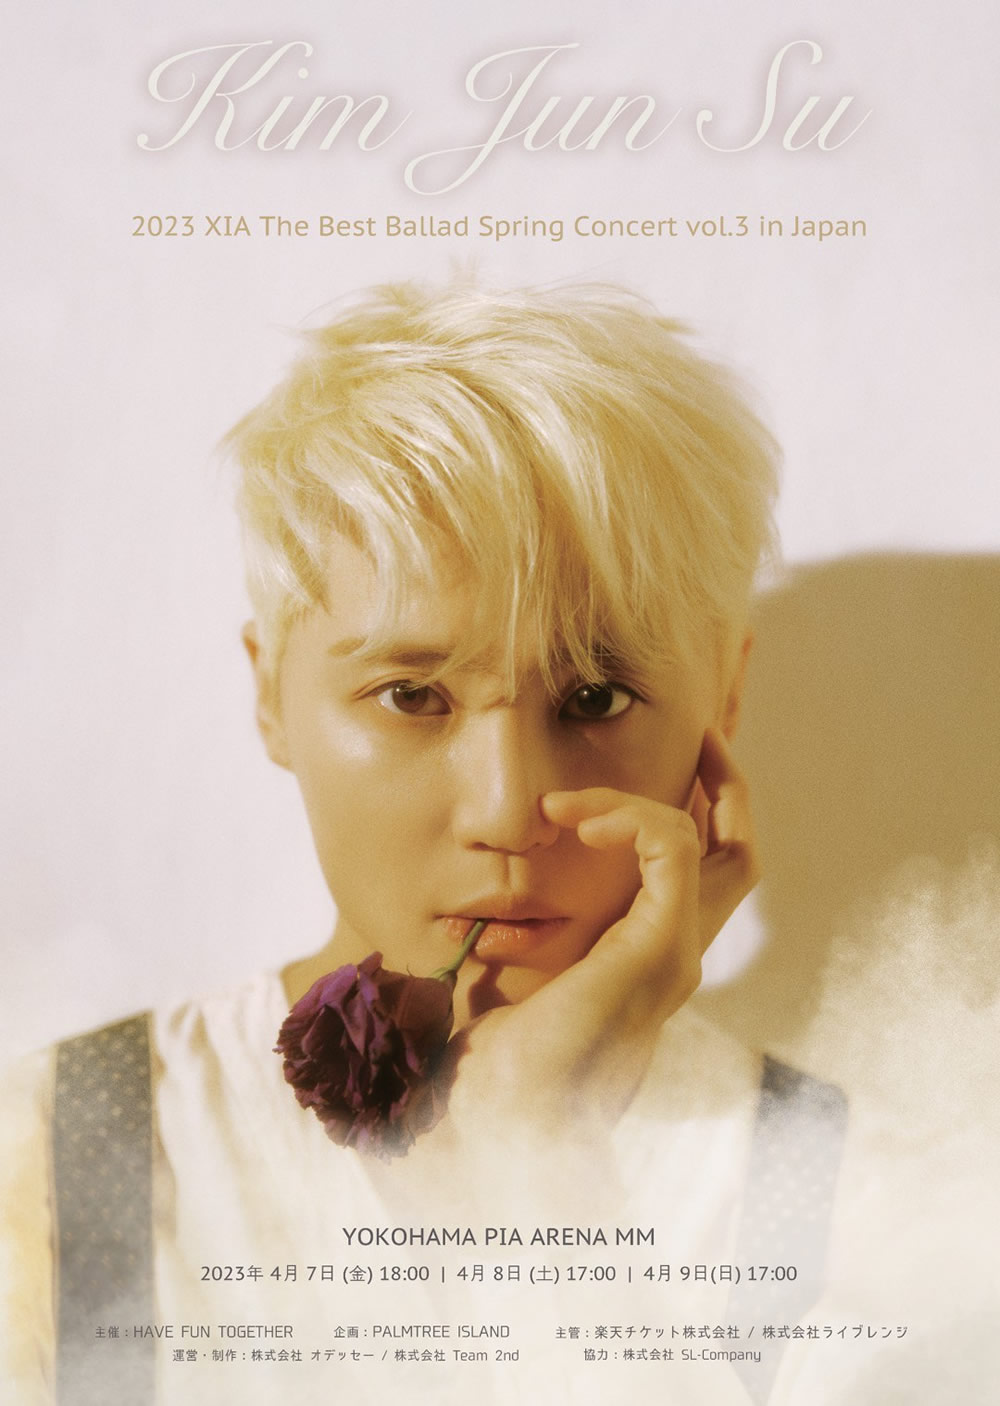 2023 XIA The Best Ballad Spring Concert vol.3 in Japan